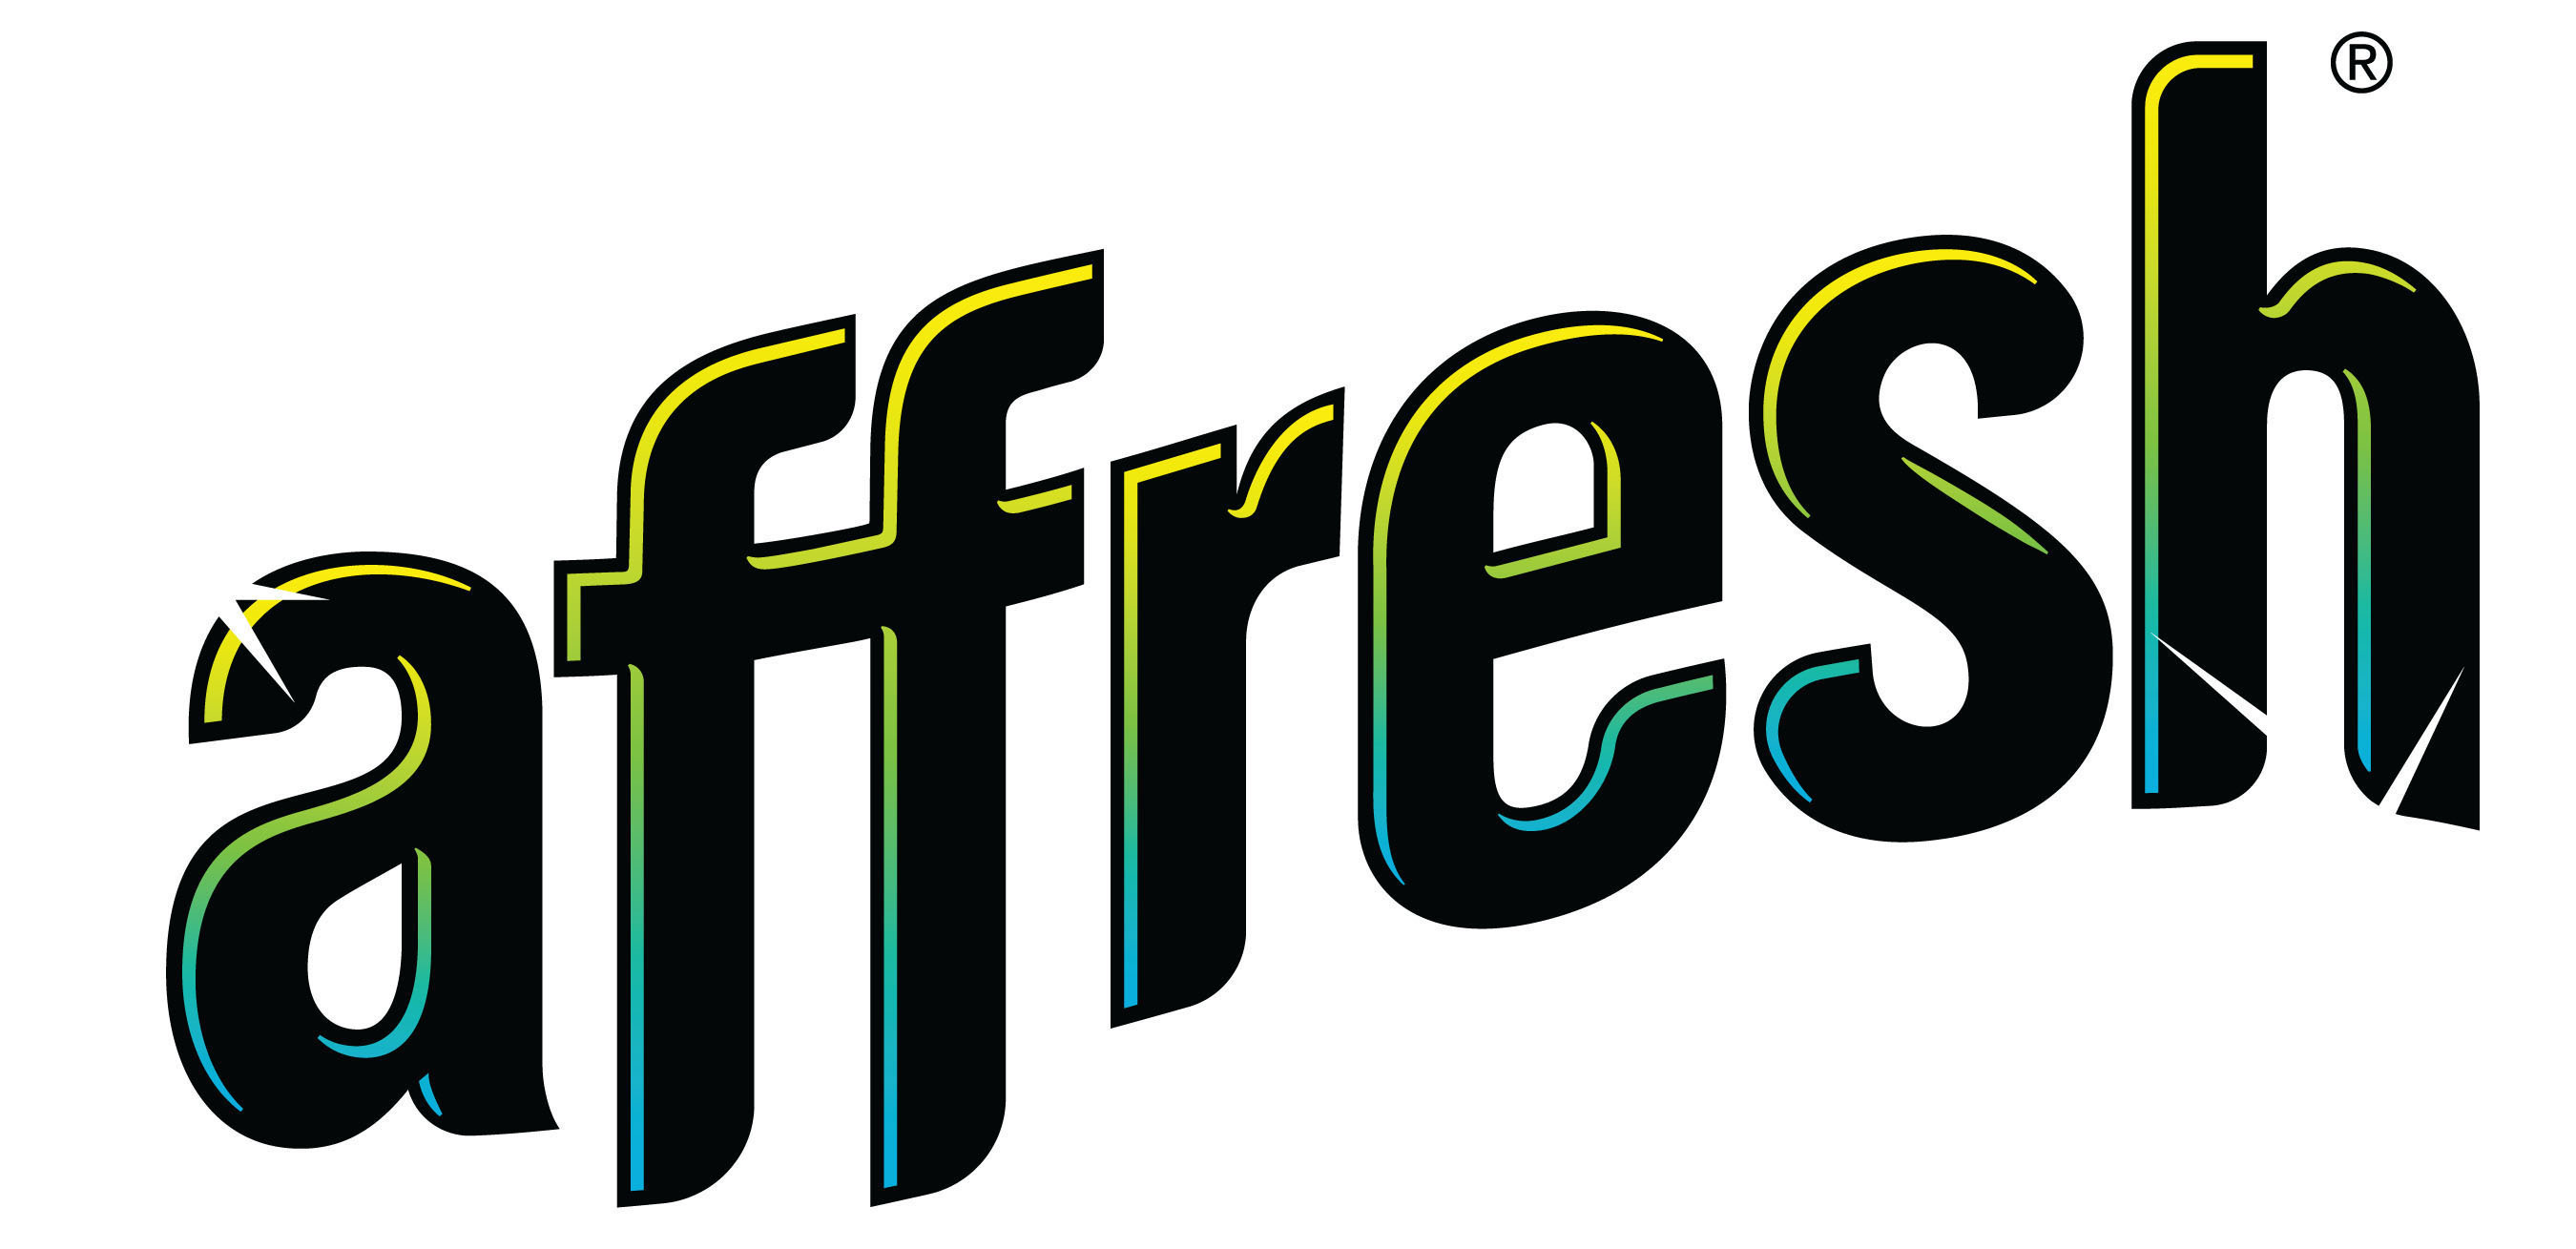 affresh logo. (PRNewsFoto/affresh) (PRNewsFoto/) (PRNewsFoto/)